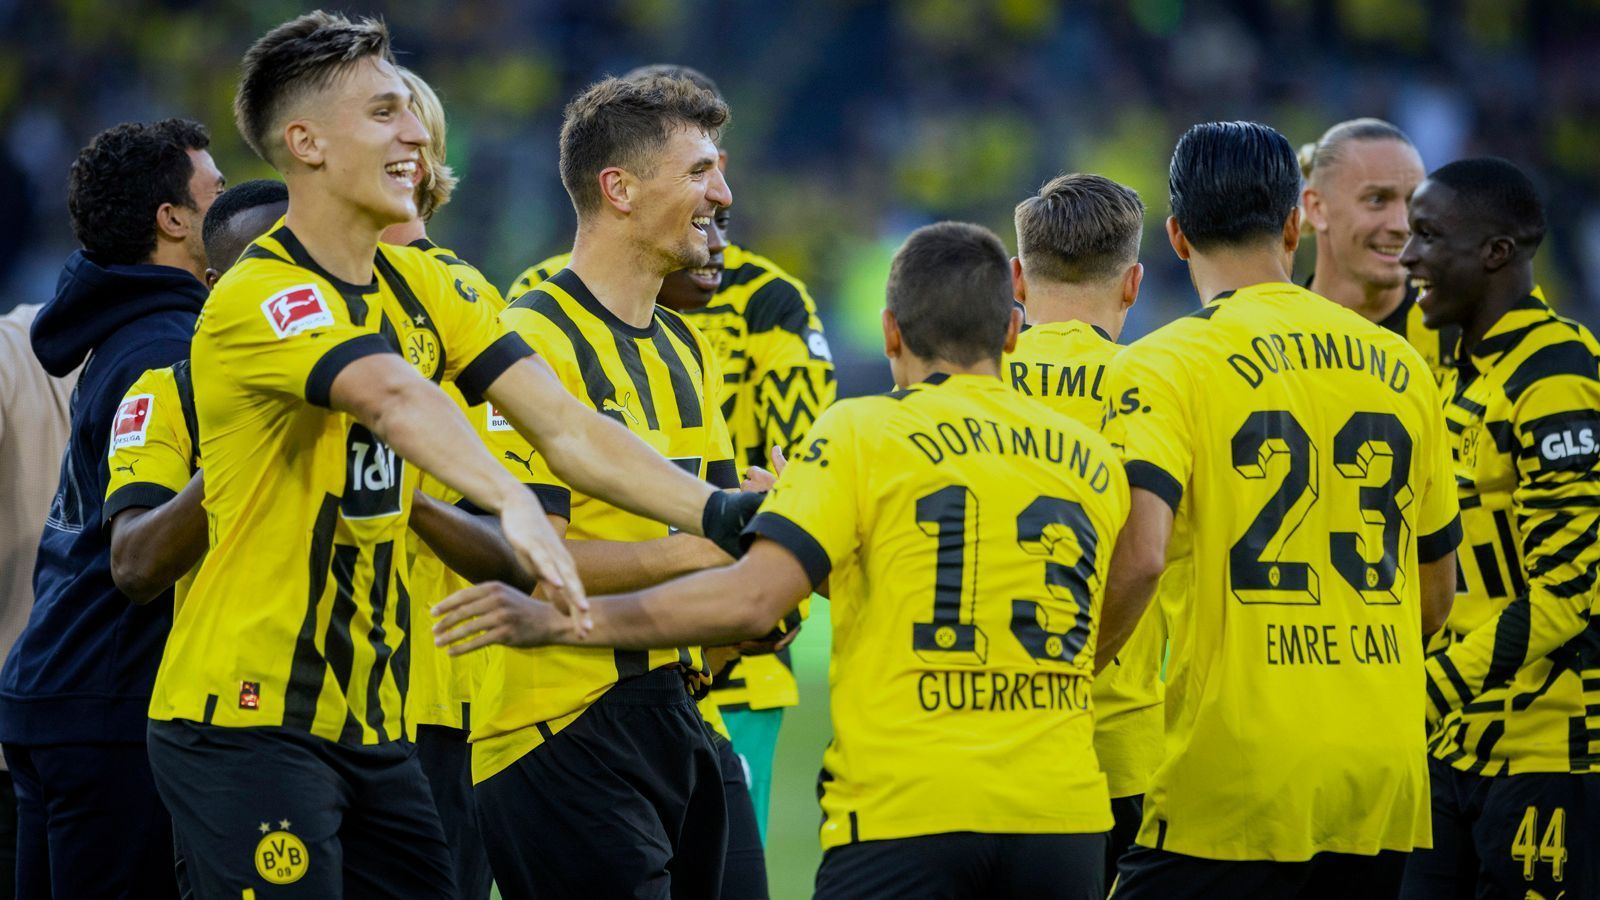 
                <strong>1. Spieltag: Borussia Dortmund stellt neuen Auftaktsieg-Rekord auf</strong><br>
                Borussia Dotmund setzte sich am 1. Spieltag knapp mit 1:0 gegen Bayer Leverkusen durch. Damit bauten die Schwarz-Gelben ihre Erfolgsserie aus. Es war der achte Sieg in Folge der Dortmunder am 1. Spieltag. So eine lange Serie an Siegen an einem 1. Bundesliga-Spieltag kann kein anderes Team aufweisen. (Quelle: optafranz/twitter)
              